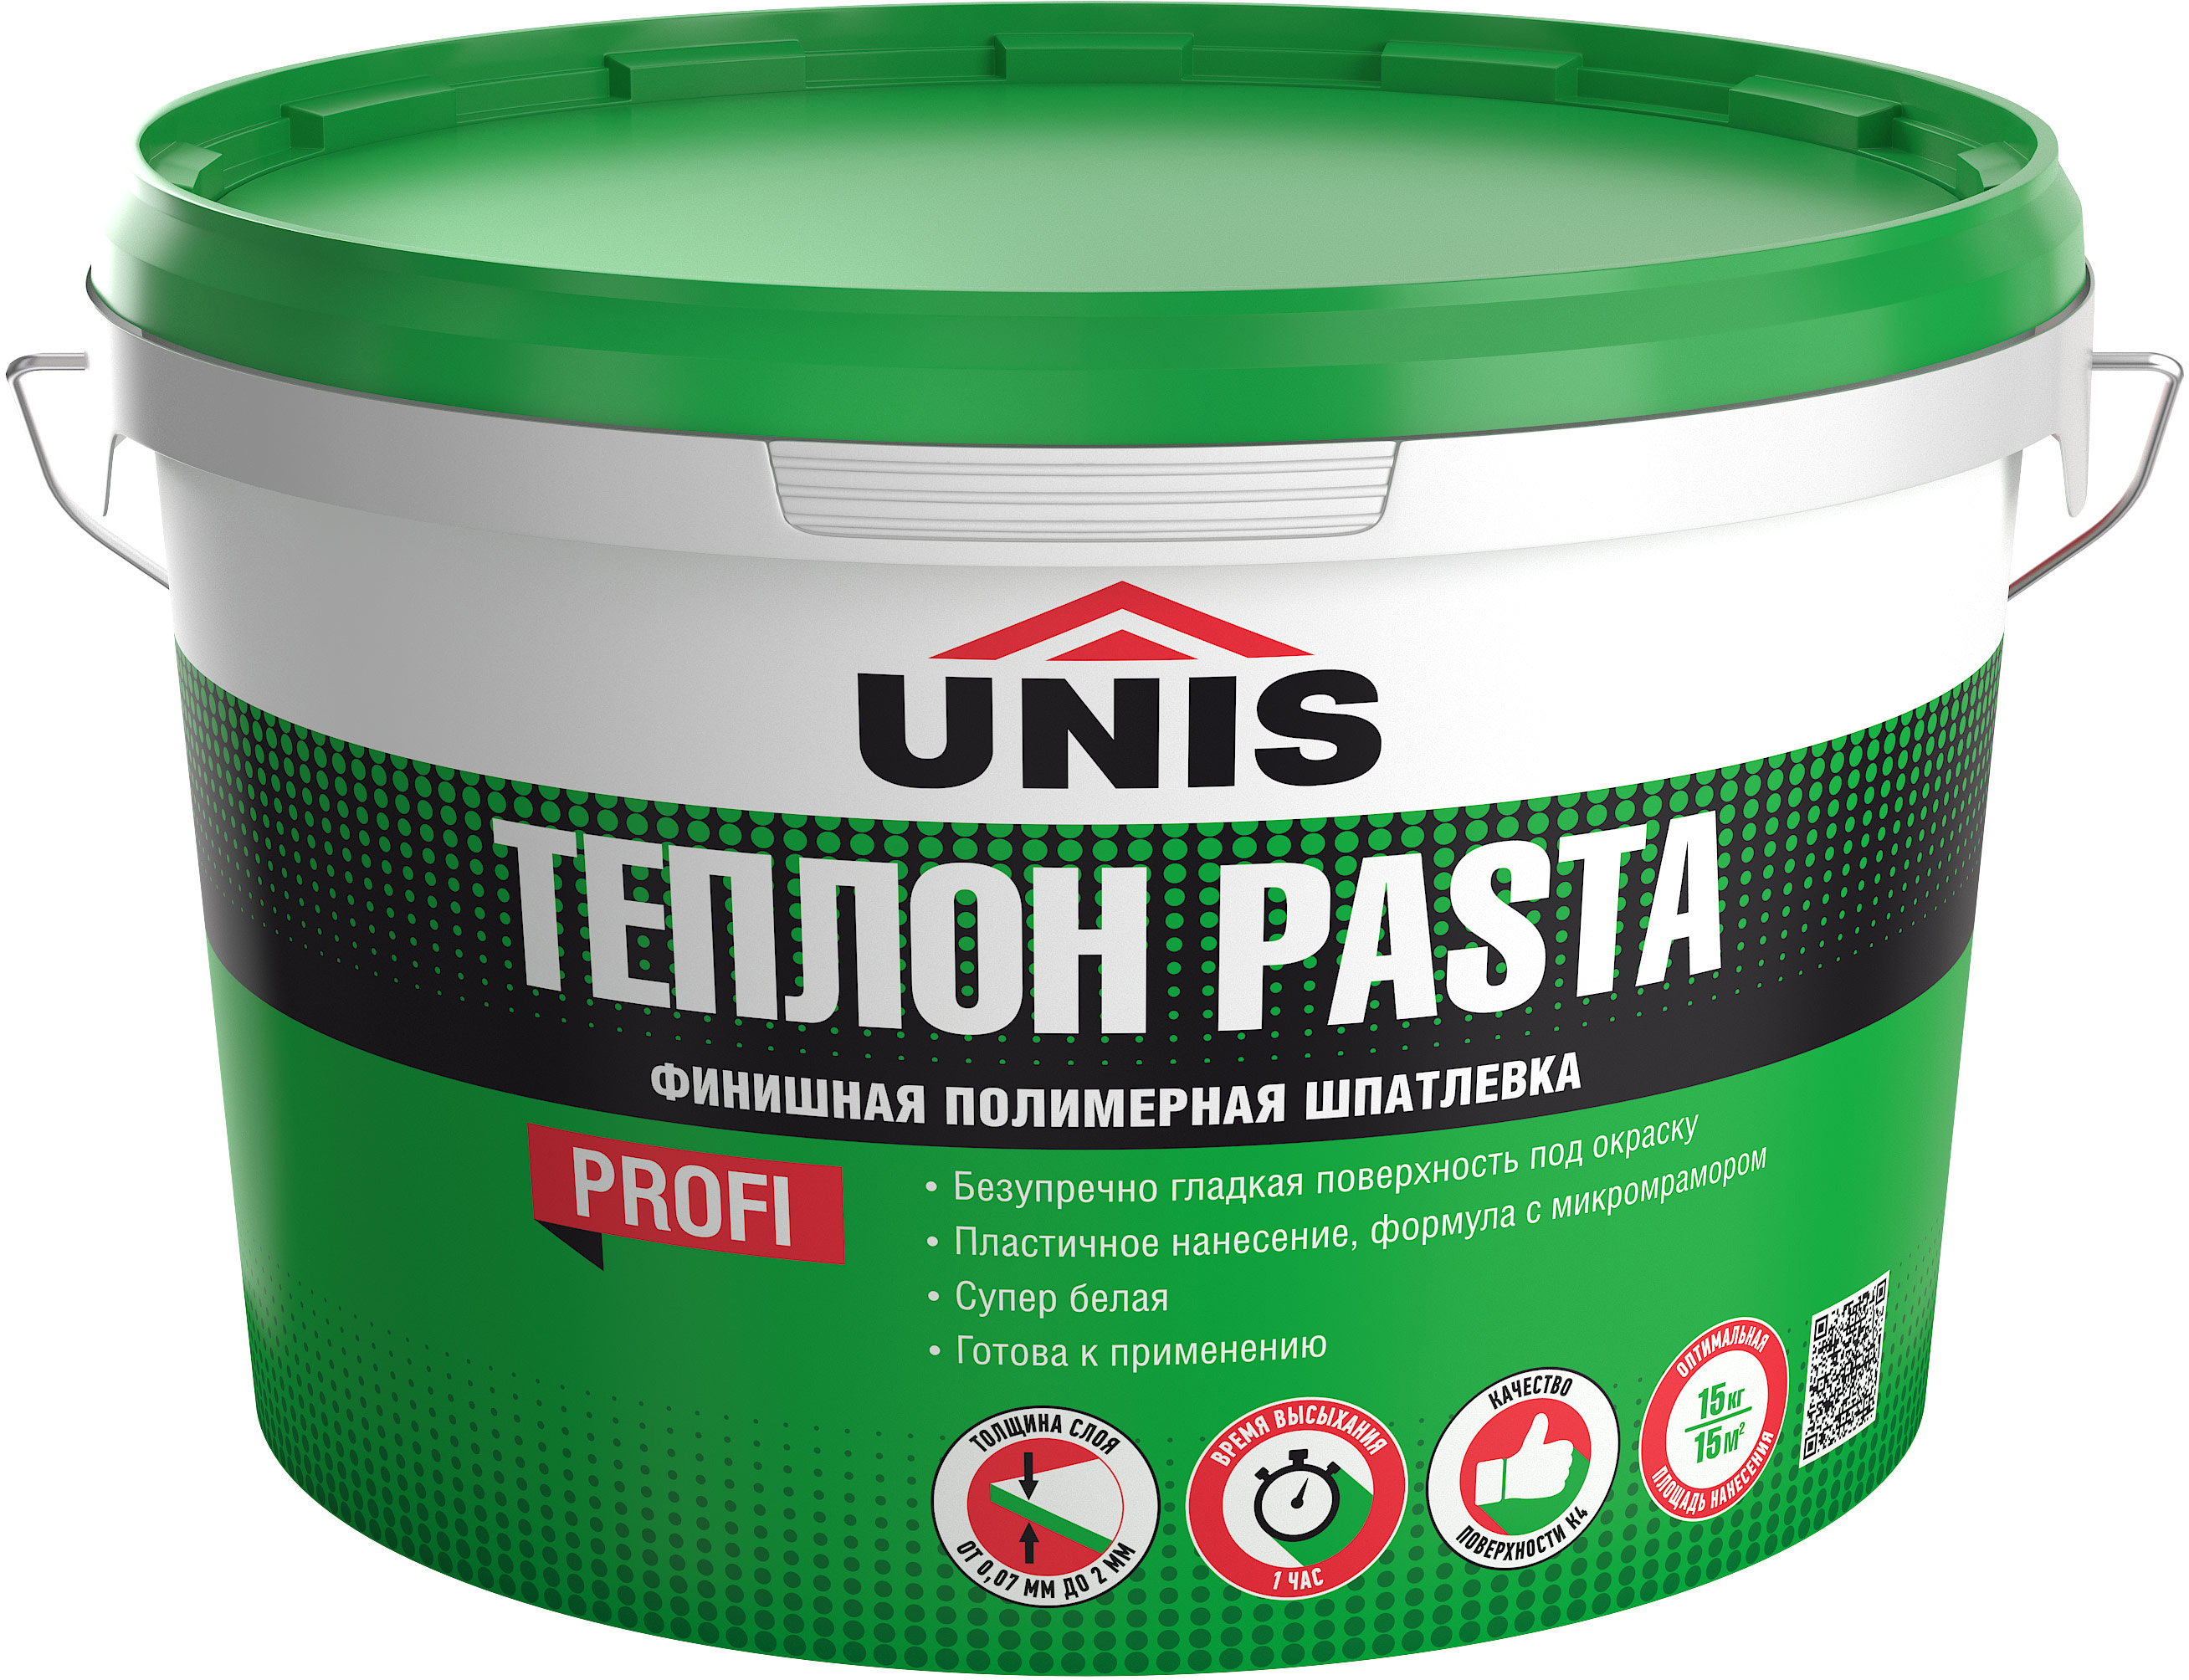 Шпатлевка полимерная финишная Unis Теплон Pasta 15 кг по цене 1140 ₽/шт .